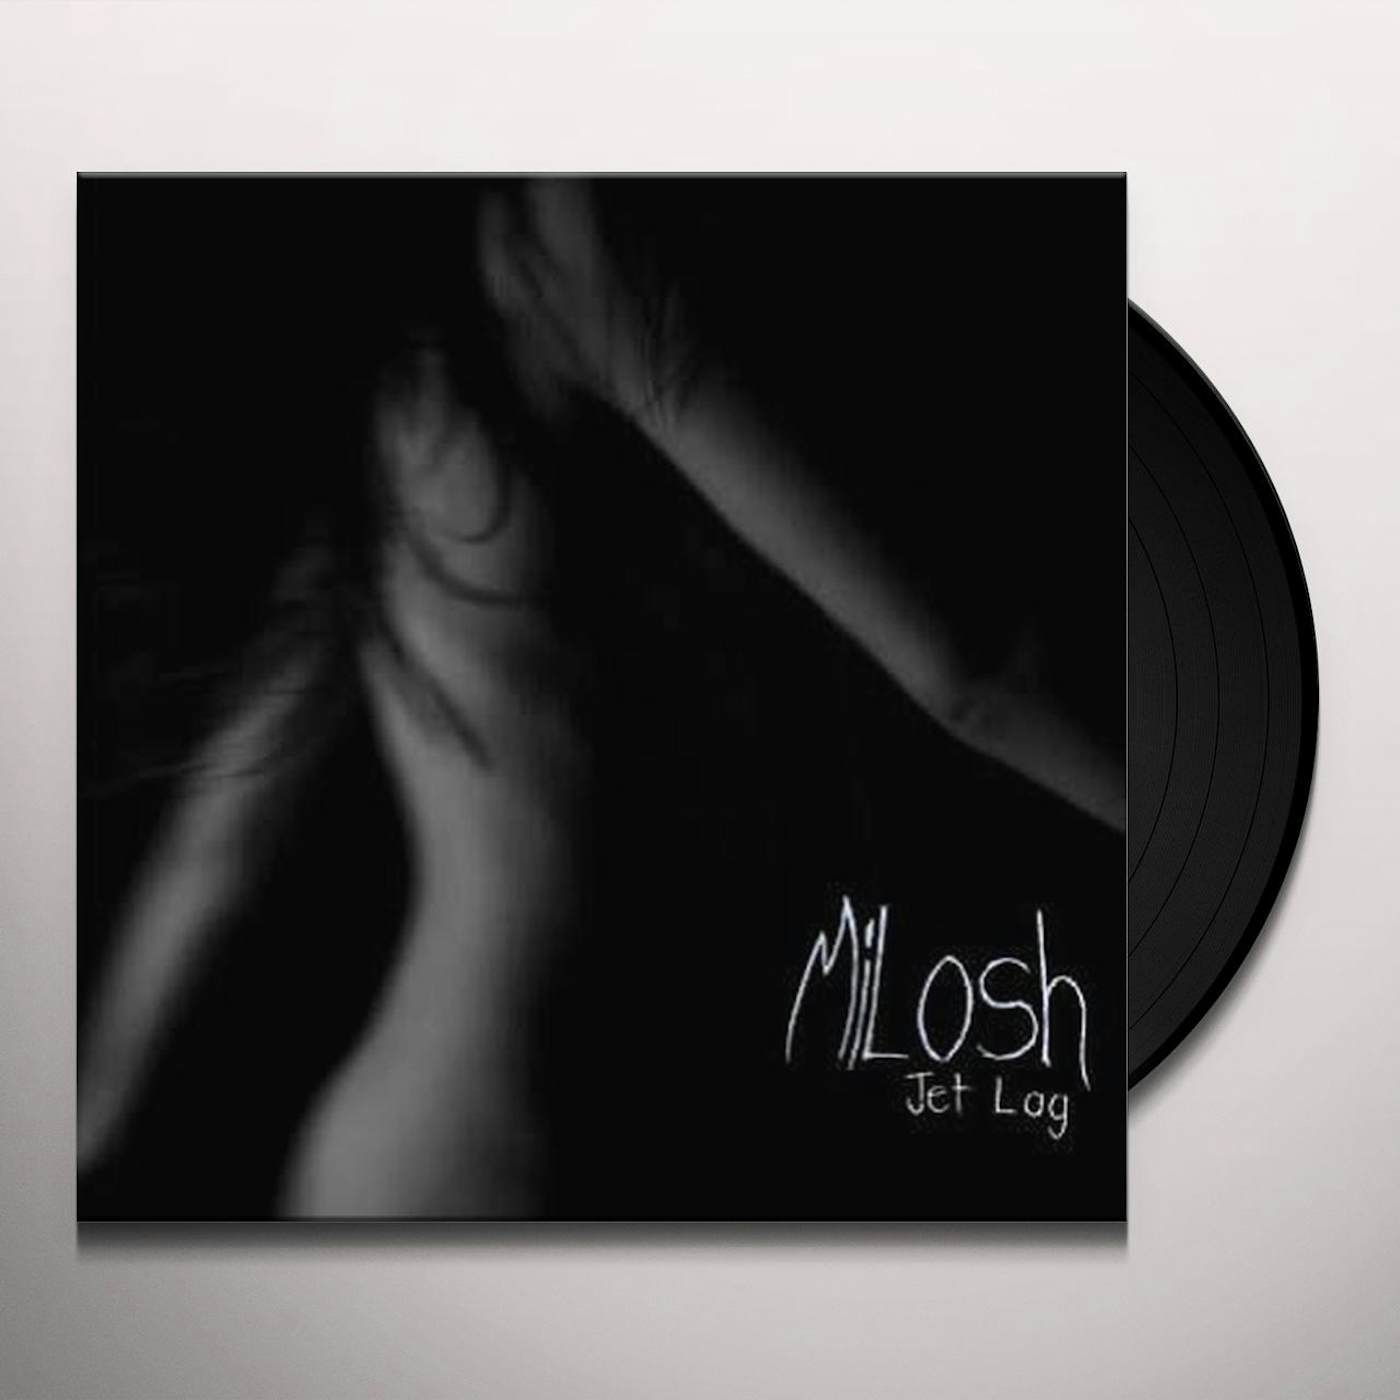 Milosh Jetlag Vinyl Record